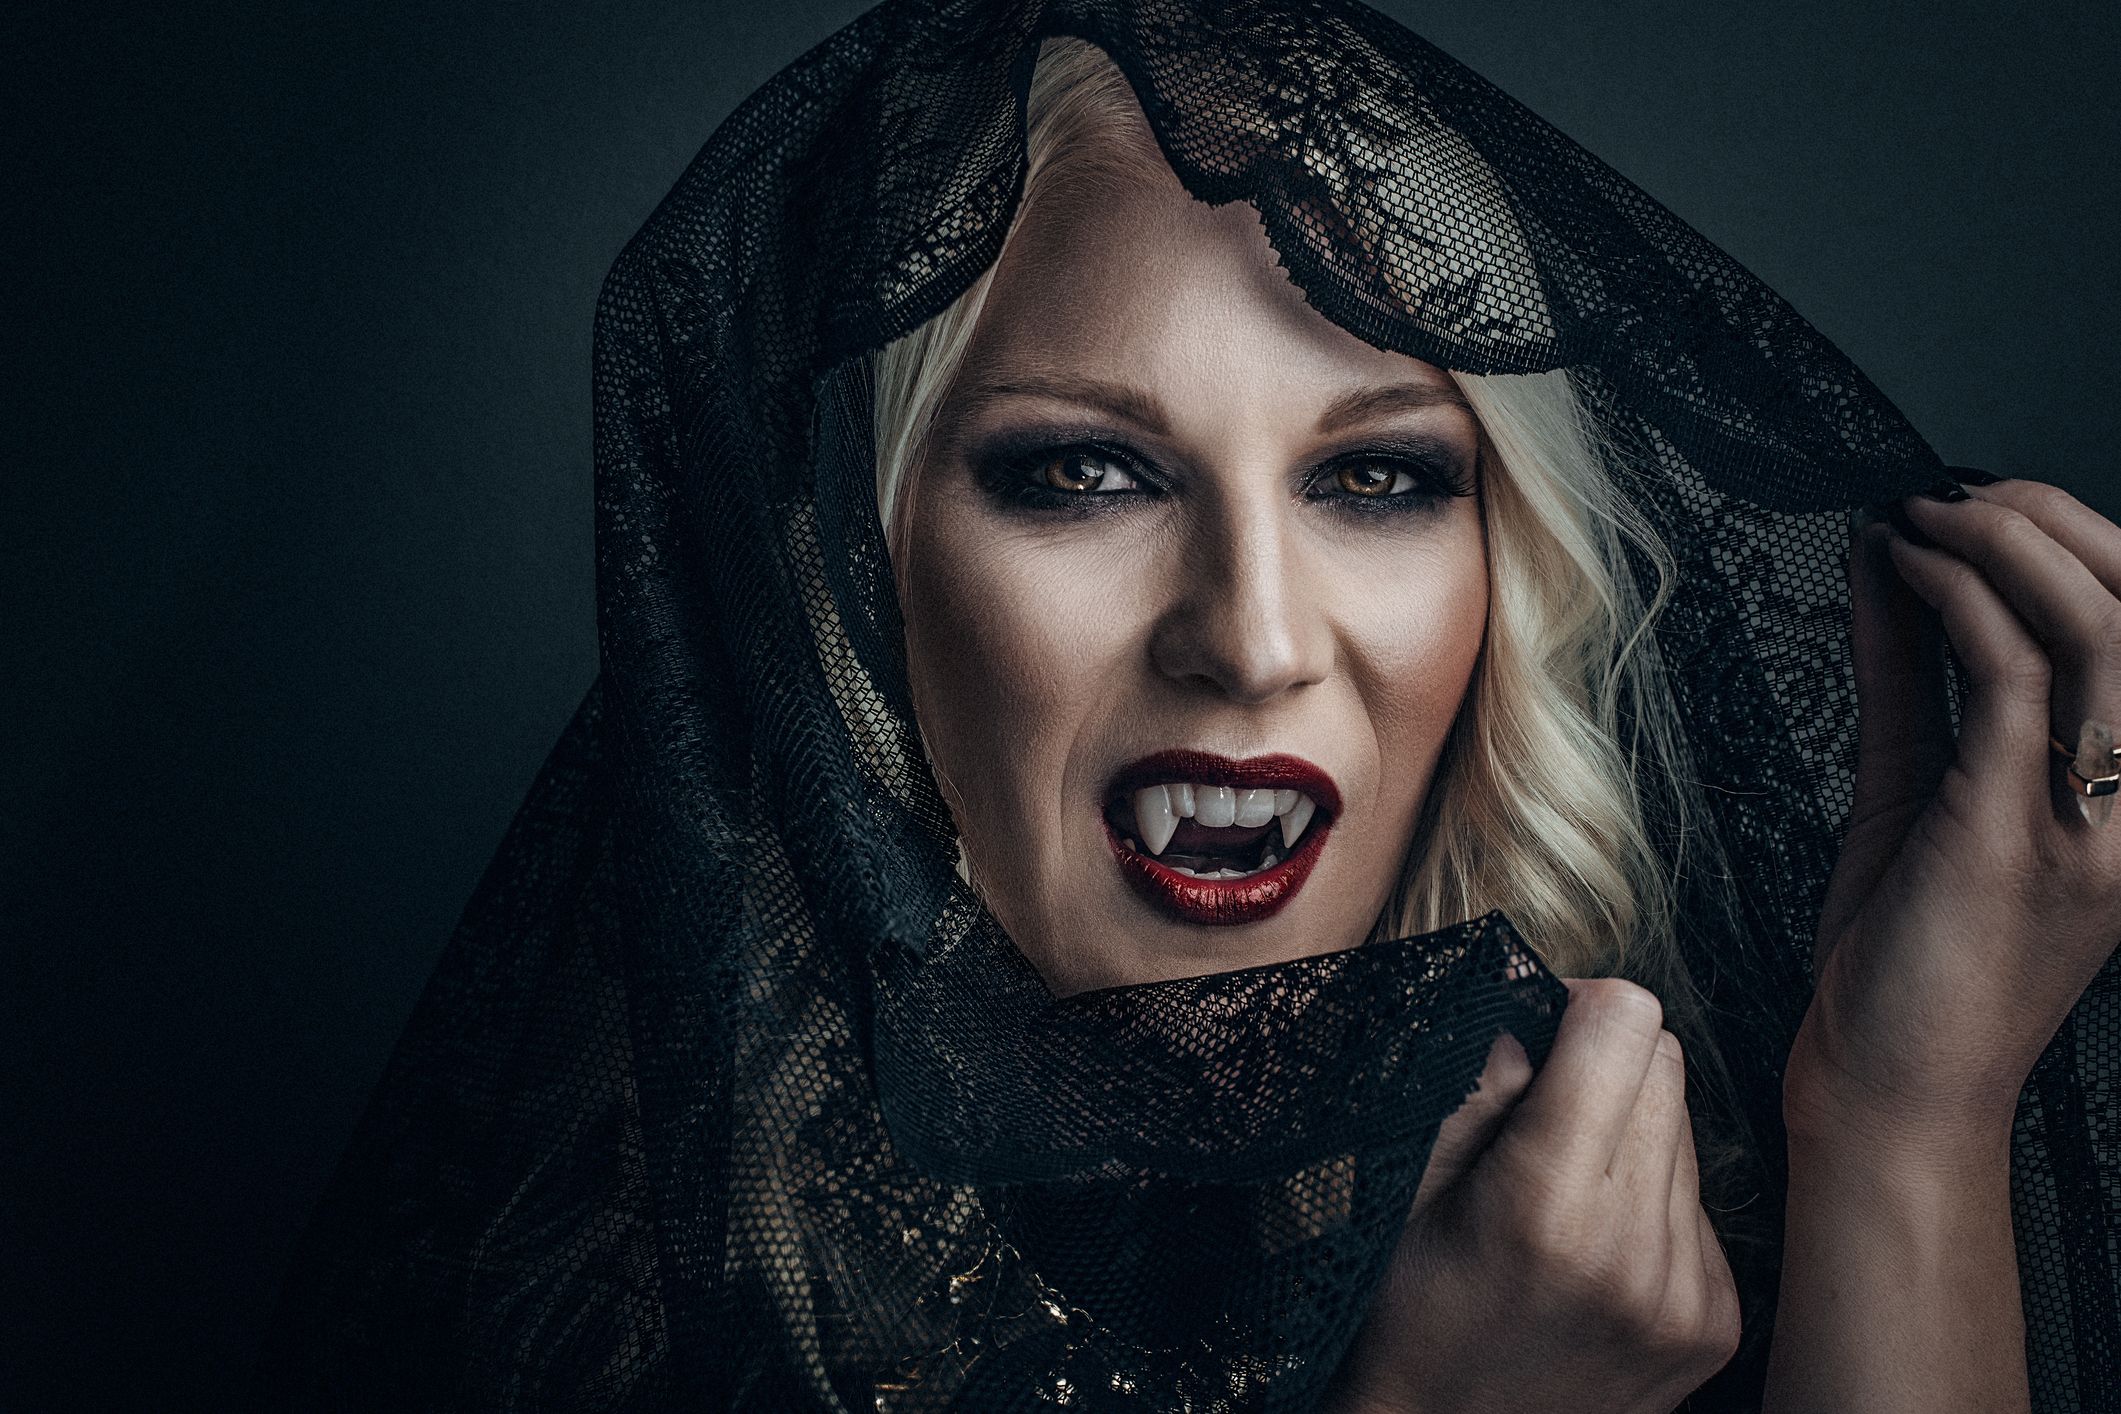 20 Best Vampire Makeup Tutorials for Halloween - How to Do Makeup